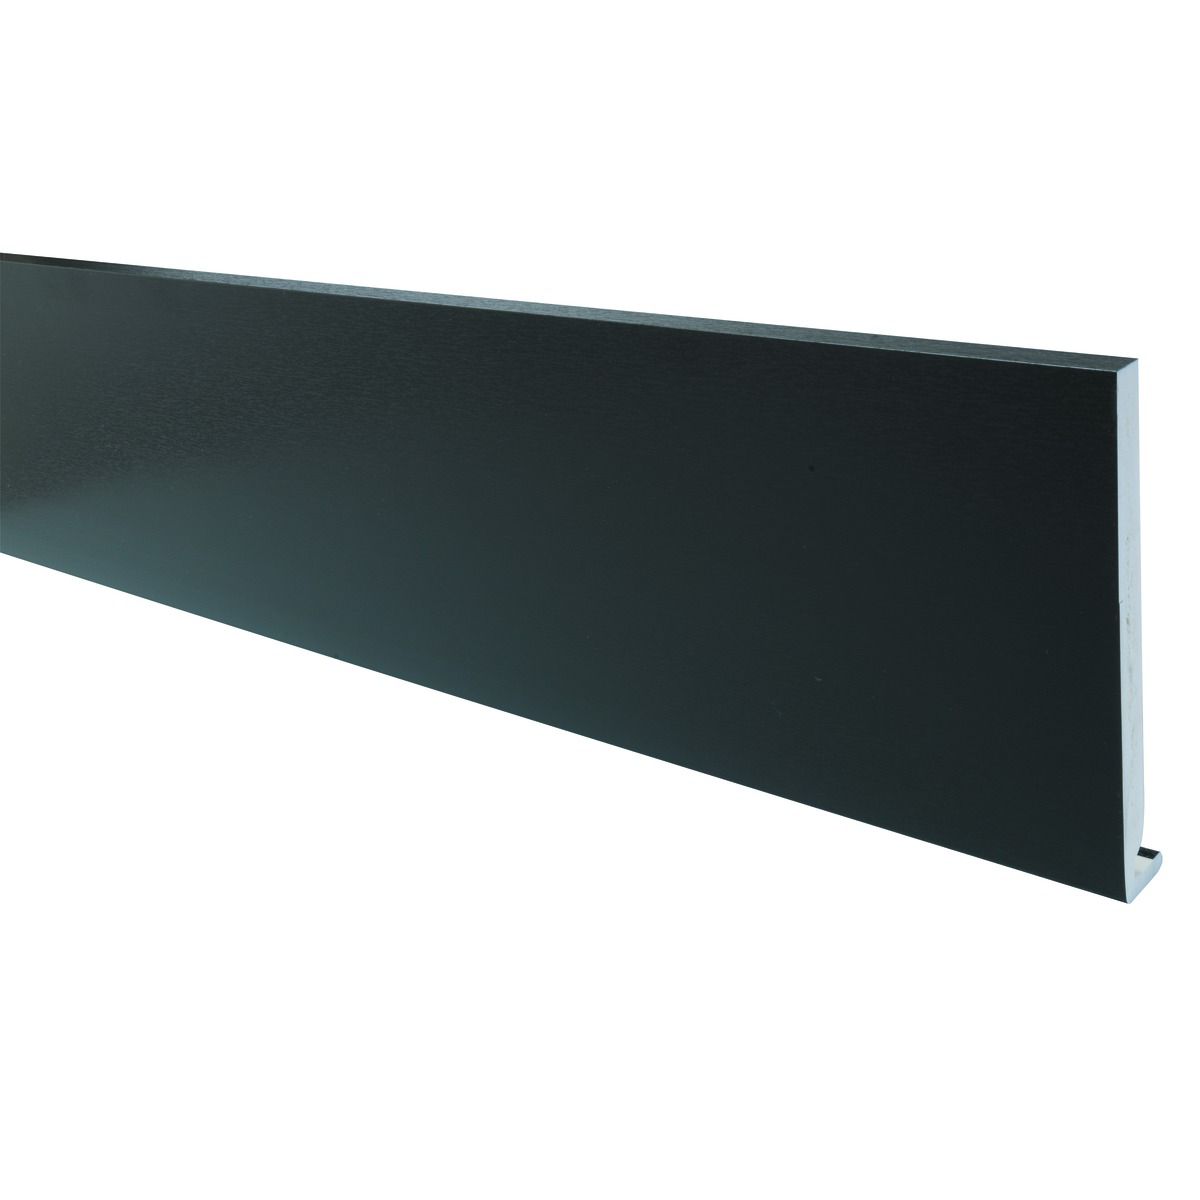 Image of Wickes PVCu Black Fascia Board 18 x 225 x 2500mm